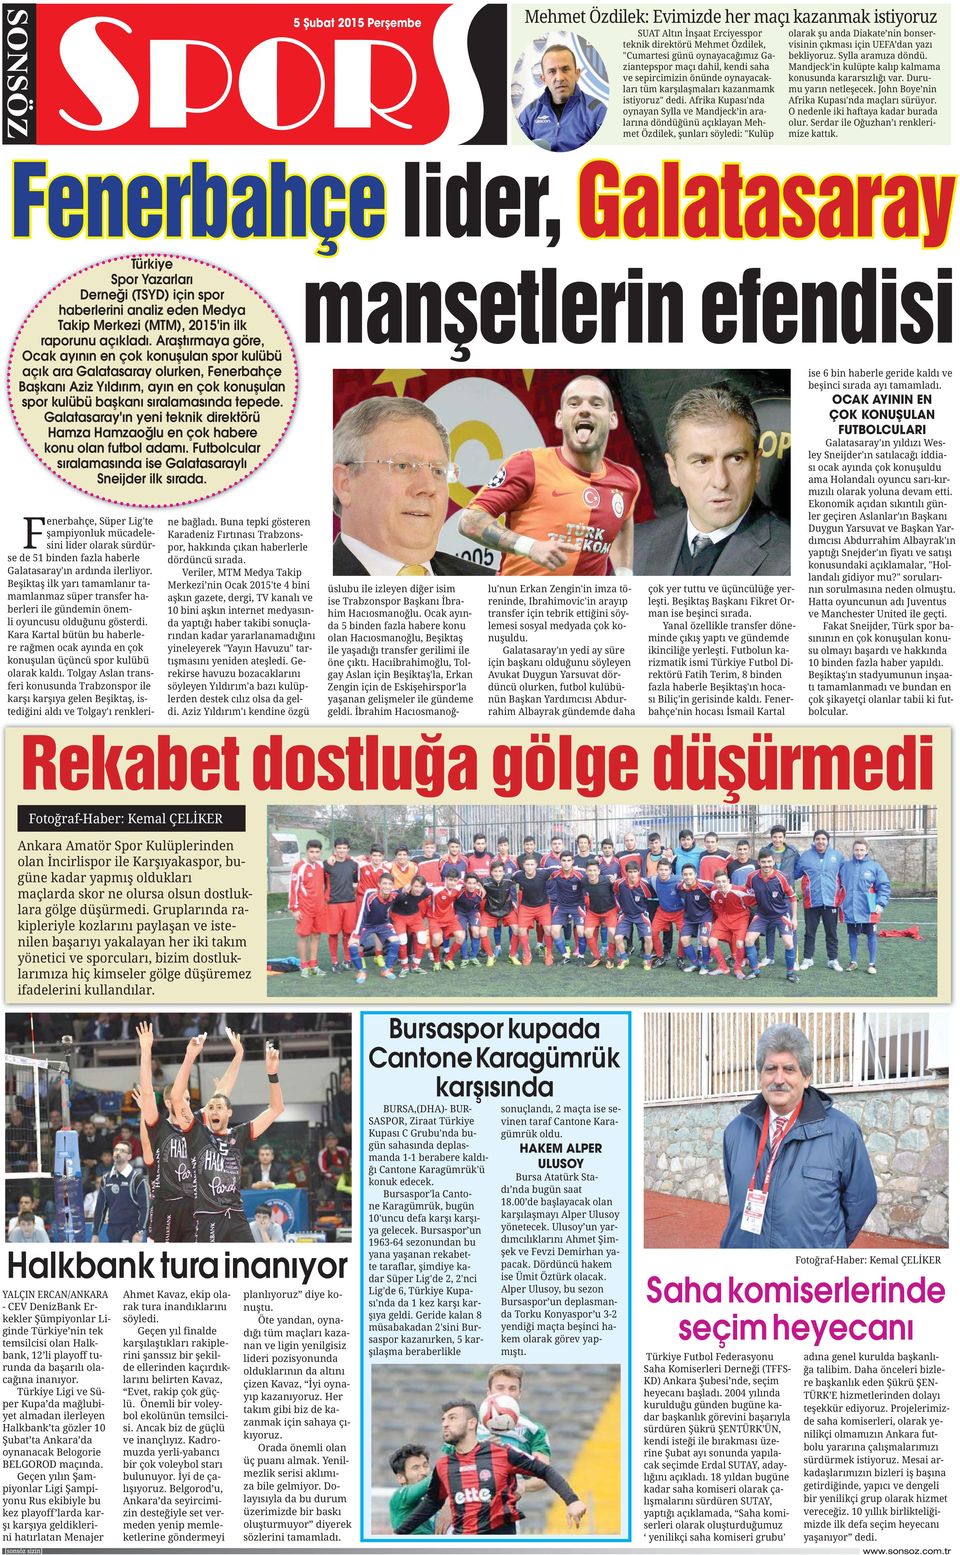 Araştırmaya göre, Ocak ayının en çok konuşulan spor kulübü açık ara Galatasaray olurken, Fenerbahçe Başkanı Aziz Yıldırım, ayın en çok konuşulan spor kulübü başkanı